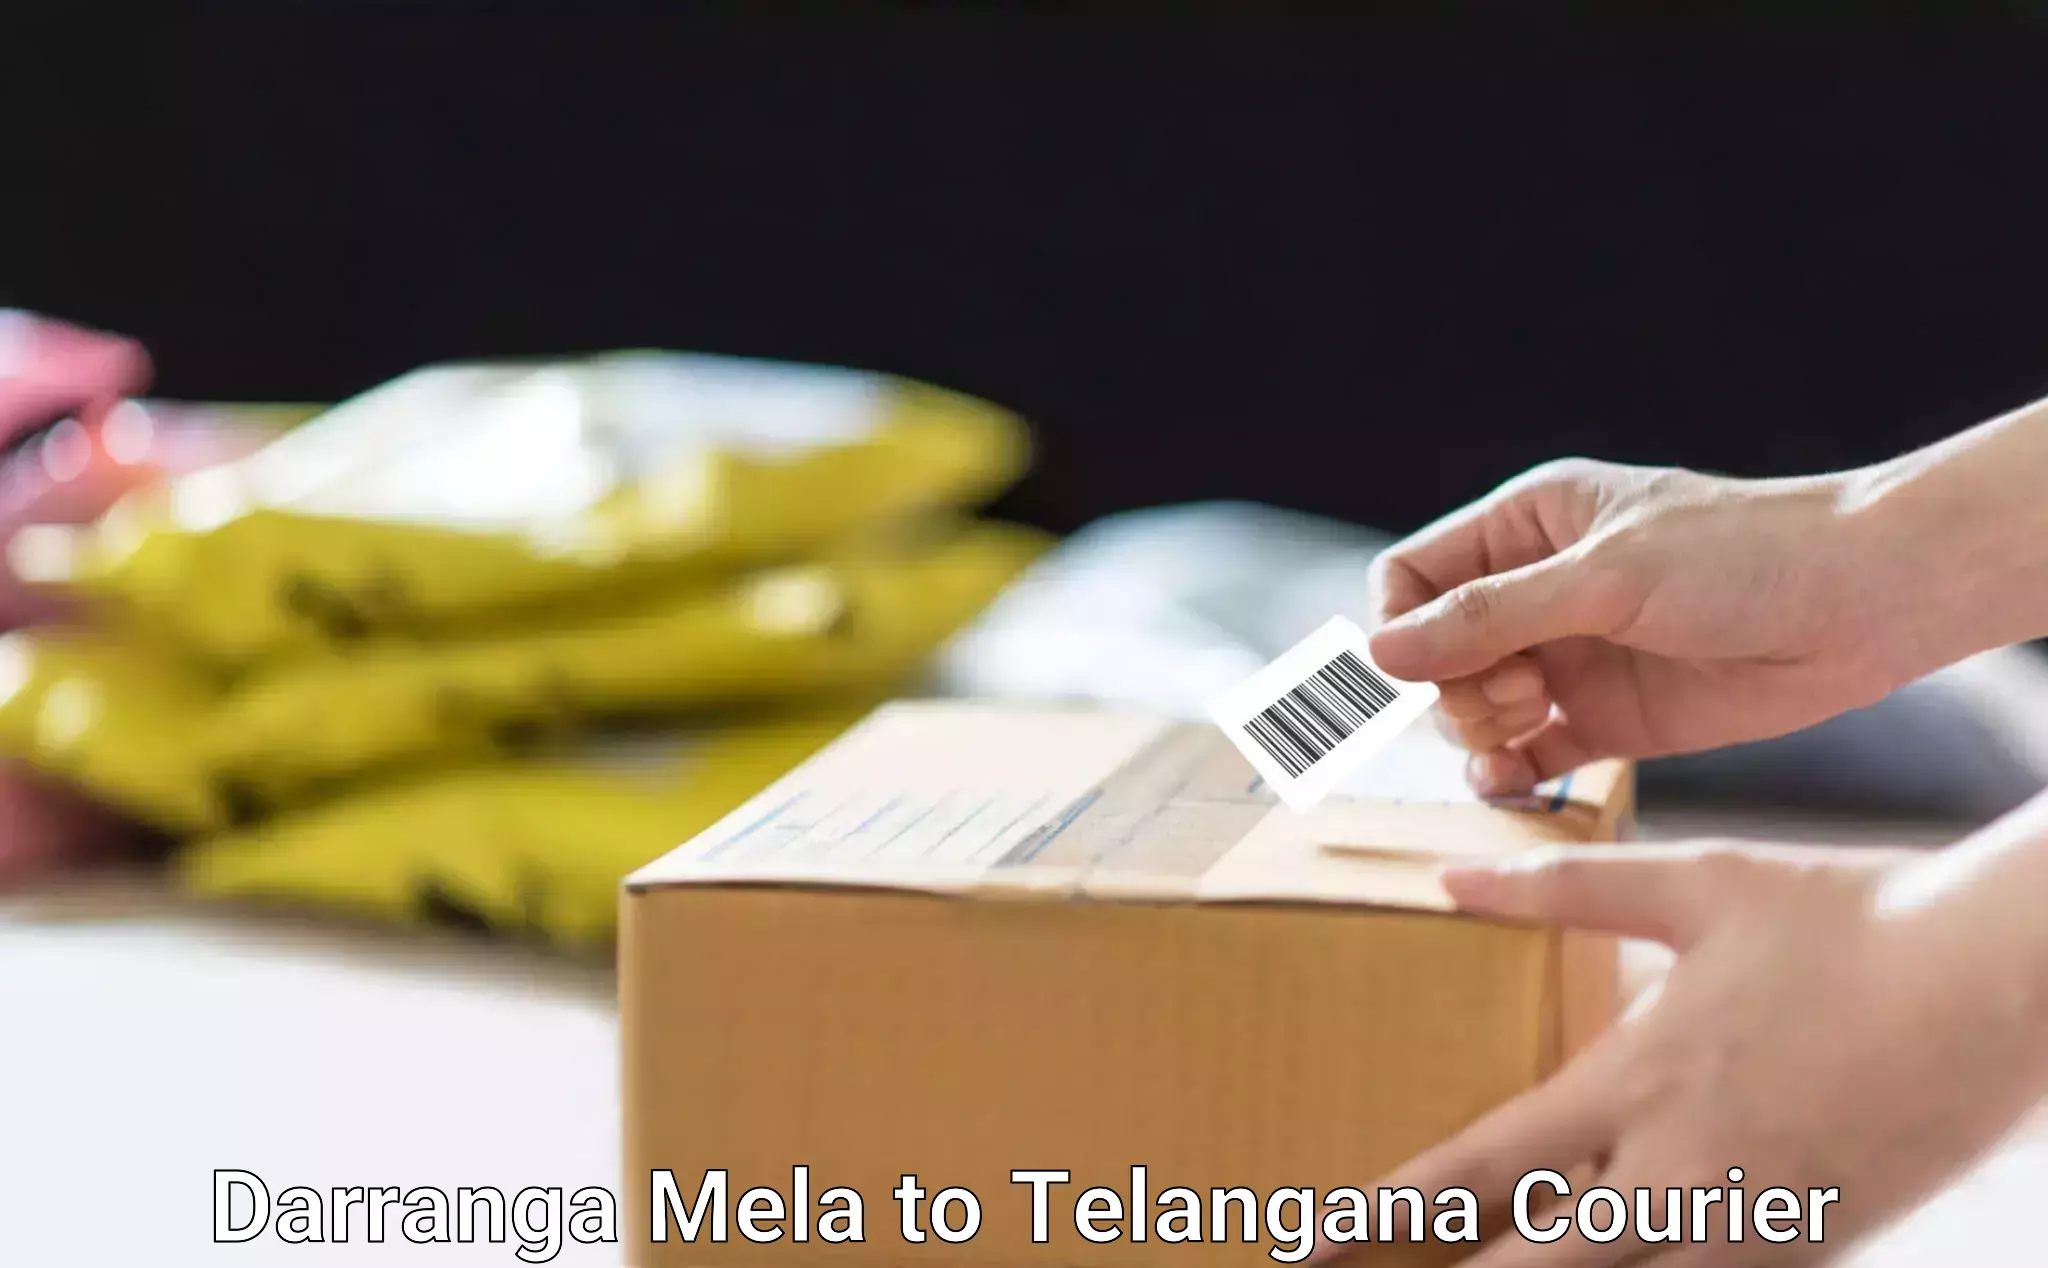 Multi-national courier services Darranga Mela to Kodad